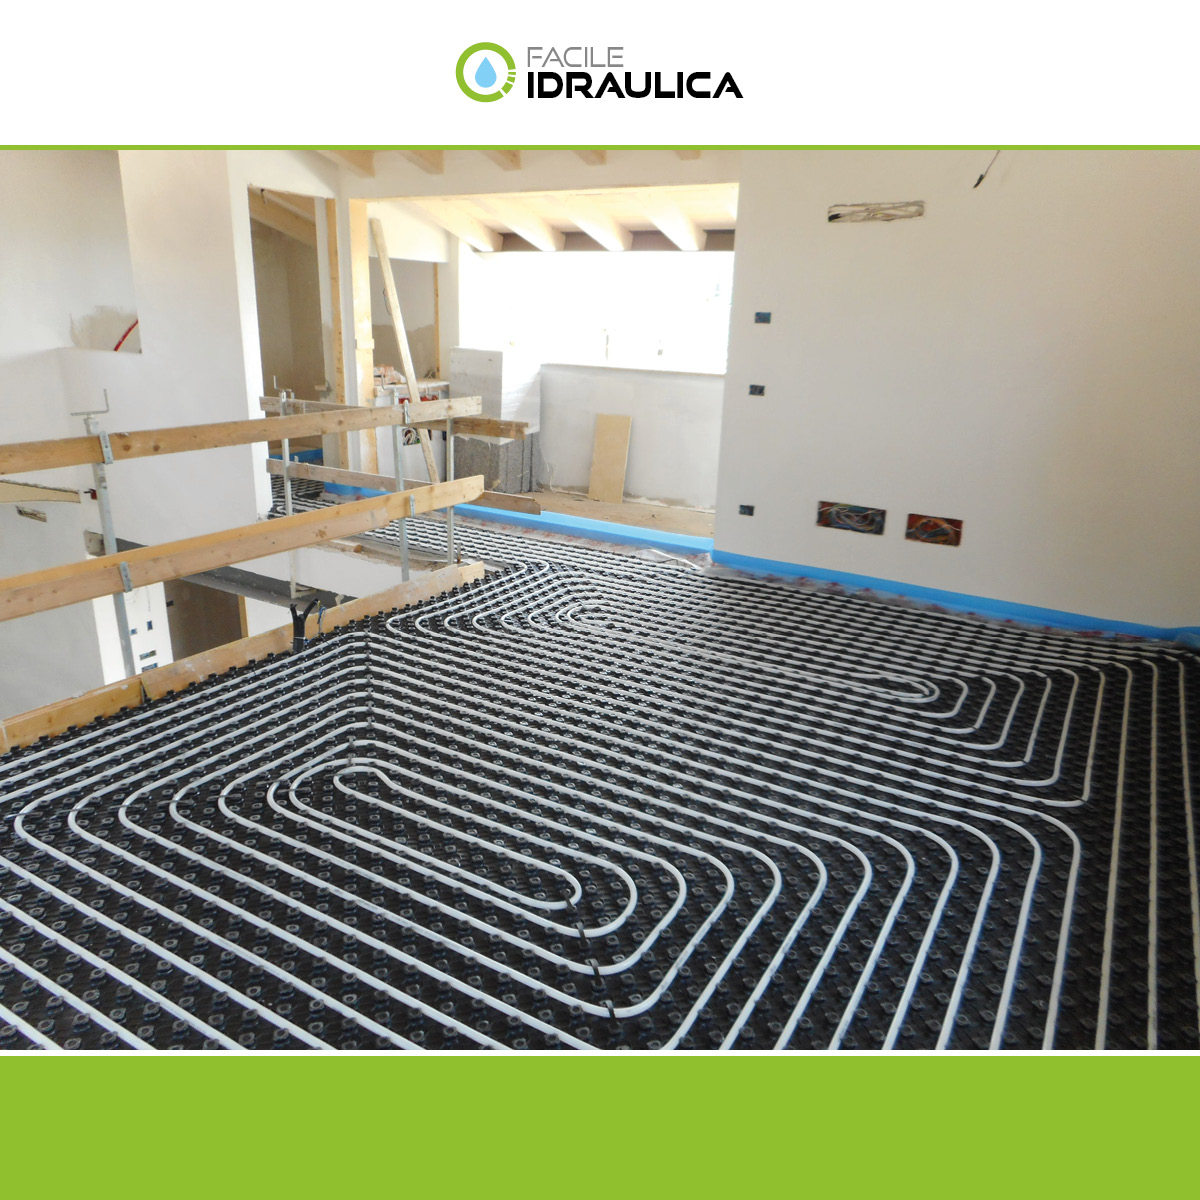 Il riscaldamento a pavimento: comfort, risparmio energetico e soluzione ideale anche nelle ristrutturazioni!